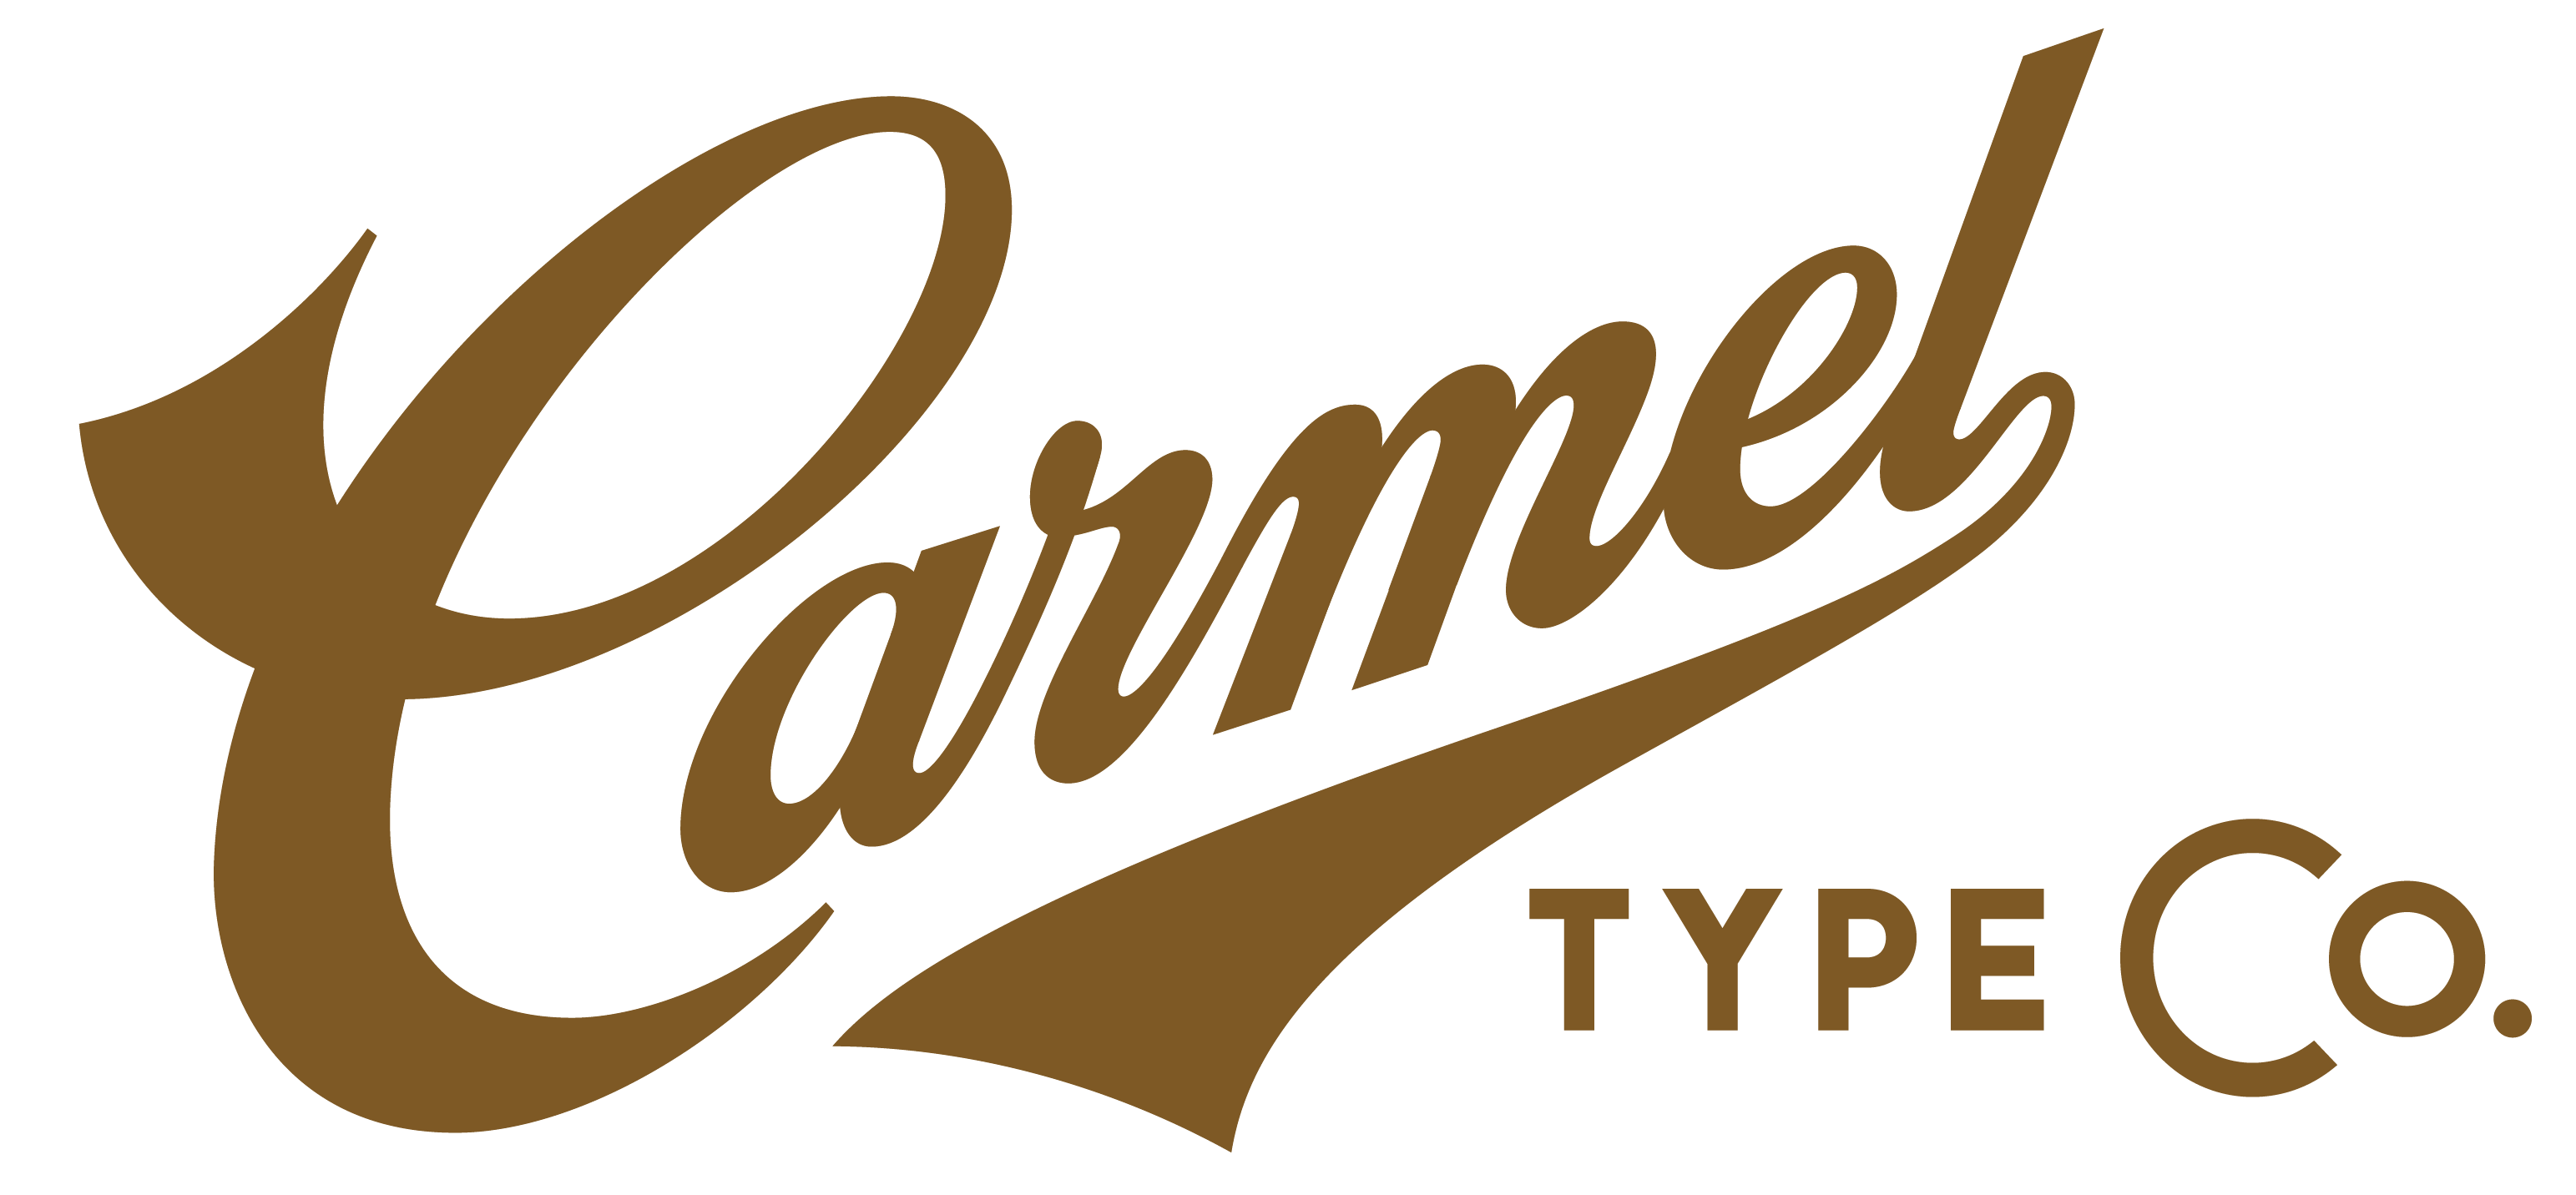 Carmel Type Co.